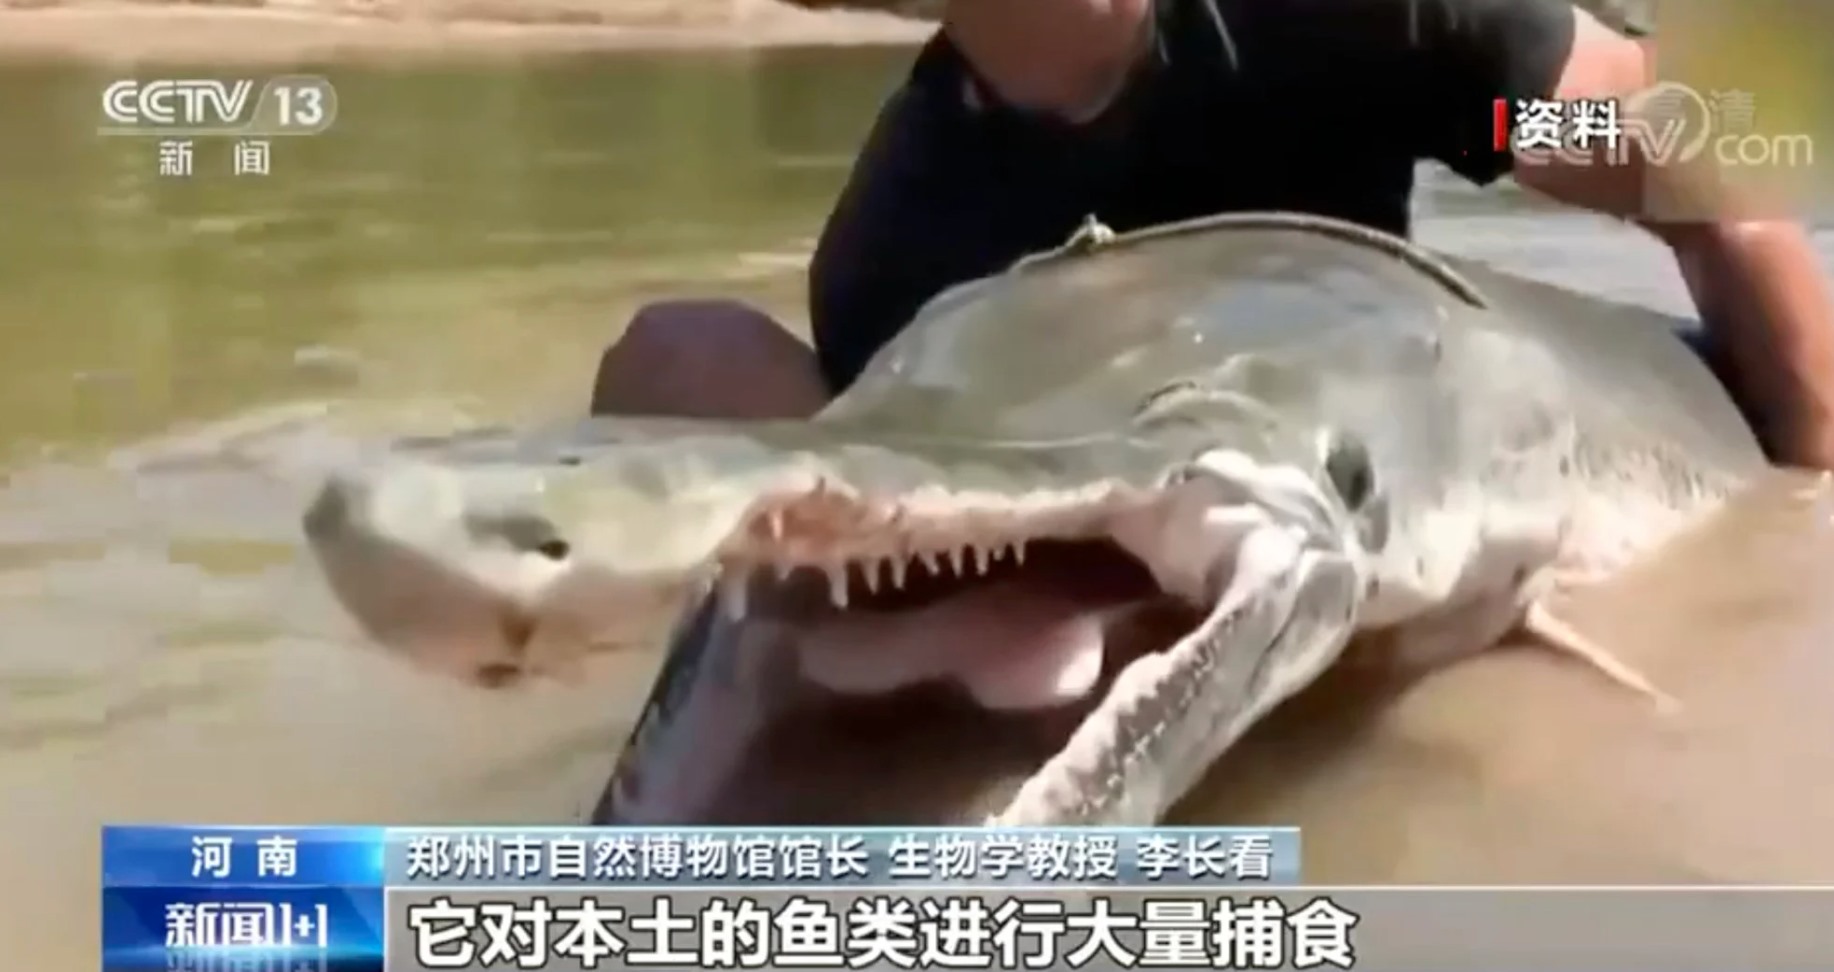 Một con cá sấu gar tương tự như con sống trong hồ ở Trung Quốc. Con cá lần đầu tiên được nhìn thấy bởi một người dân địa phương, nhưng đã thu hút sự chú ý của cả nước sau khi video về con vật này xuất hiện trên mạng một thời gian ngắn sau đó. Ảnh: CCTV